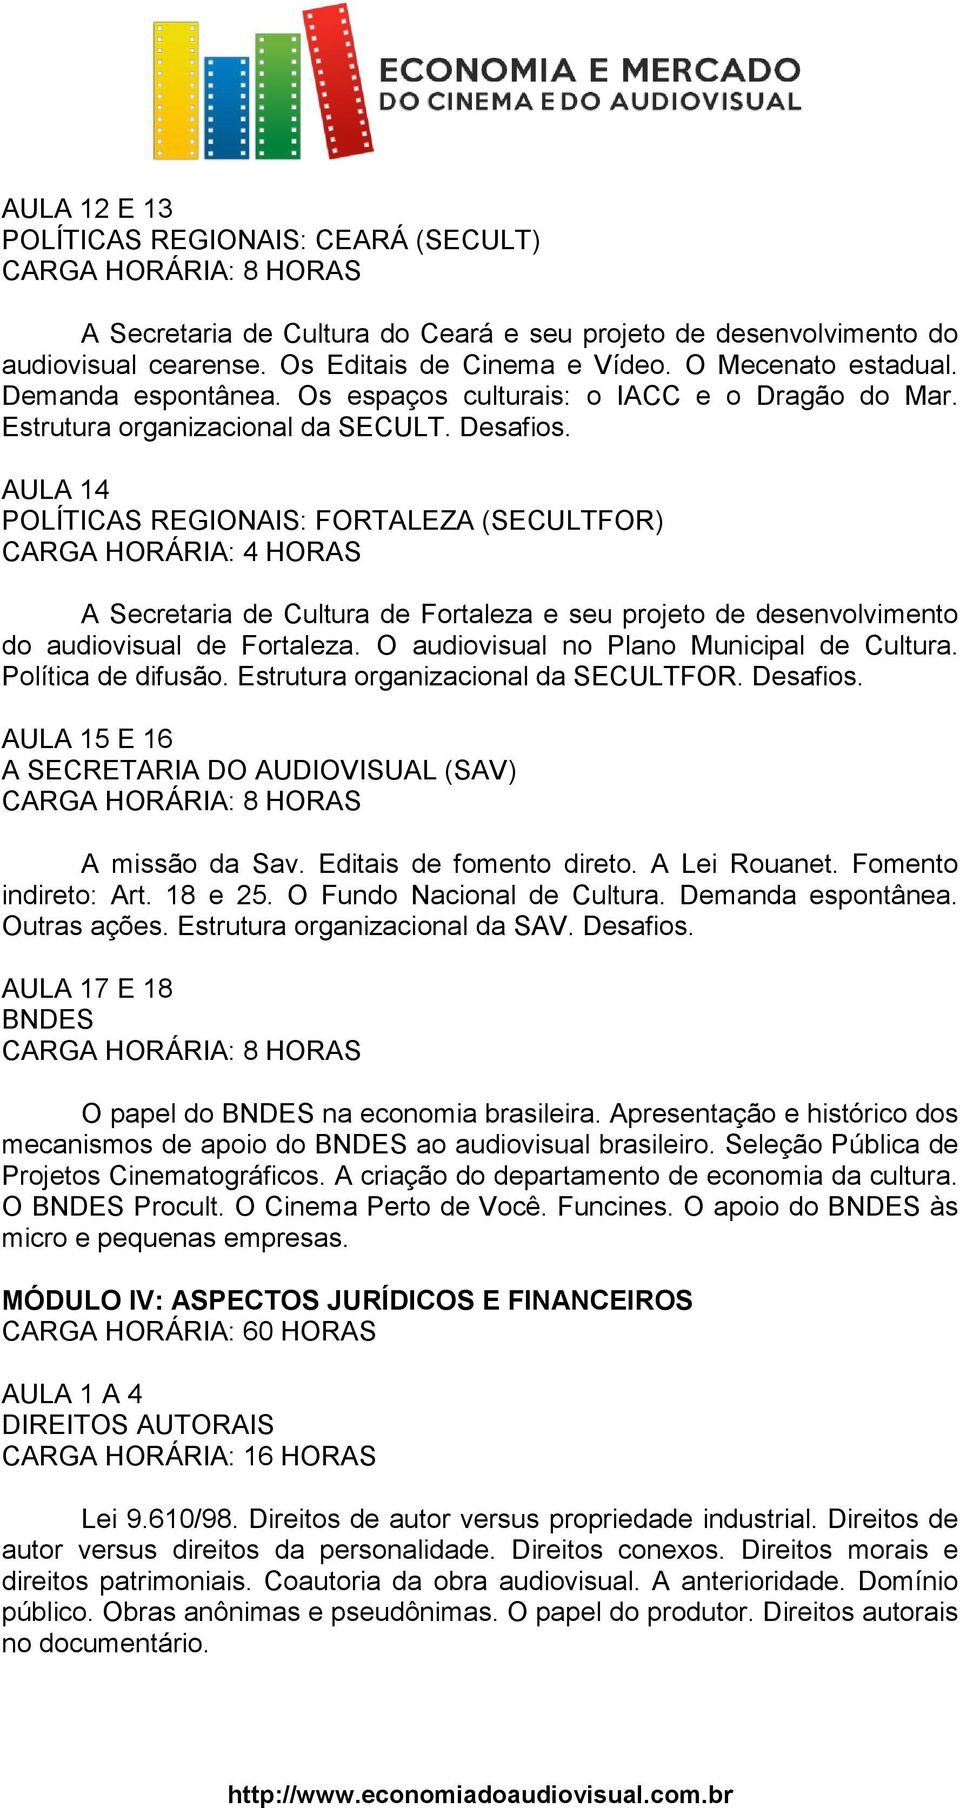 AULA 14 POLÍTICAS REGIONAIS: FORTALEZA (SECULTFOR) A Secretaria de Cultura de Fortaleza e seu projeto de desenvolvimento do audiovisual de Fortaleza. O audiovisual no Plano Municipal de Cultura.